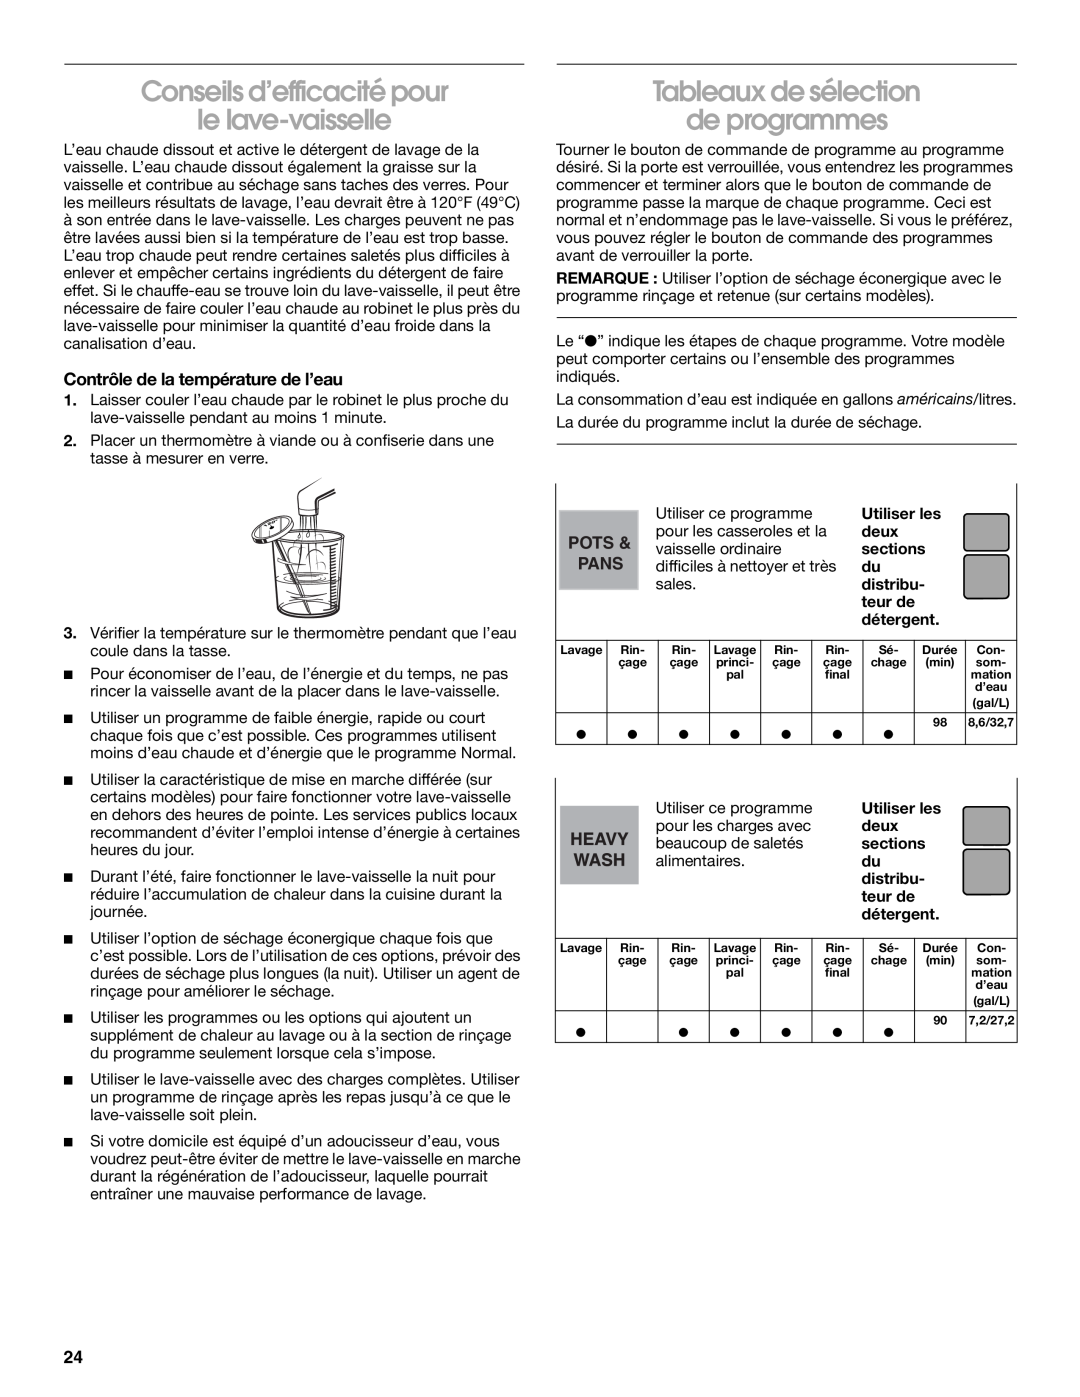 Roper rud4000 manual Conseils d’efficacité pour le lave-vaisselle, Tableaux de sélection de programmes, Pots, Pans 